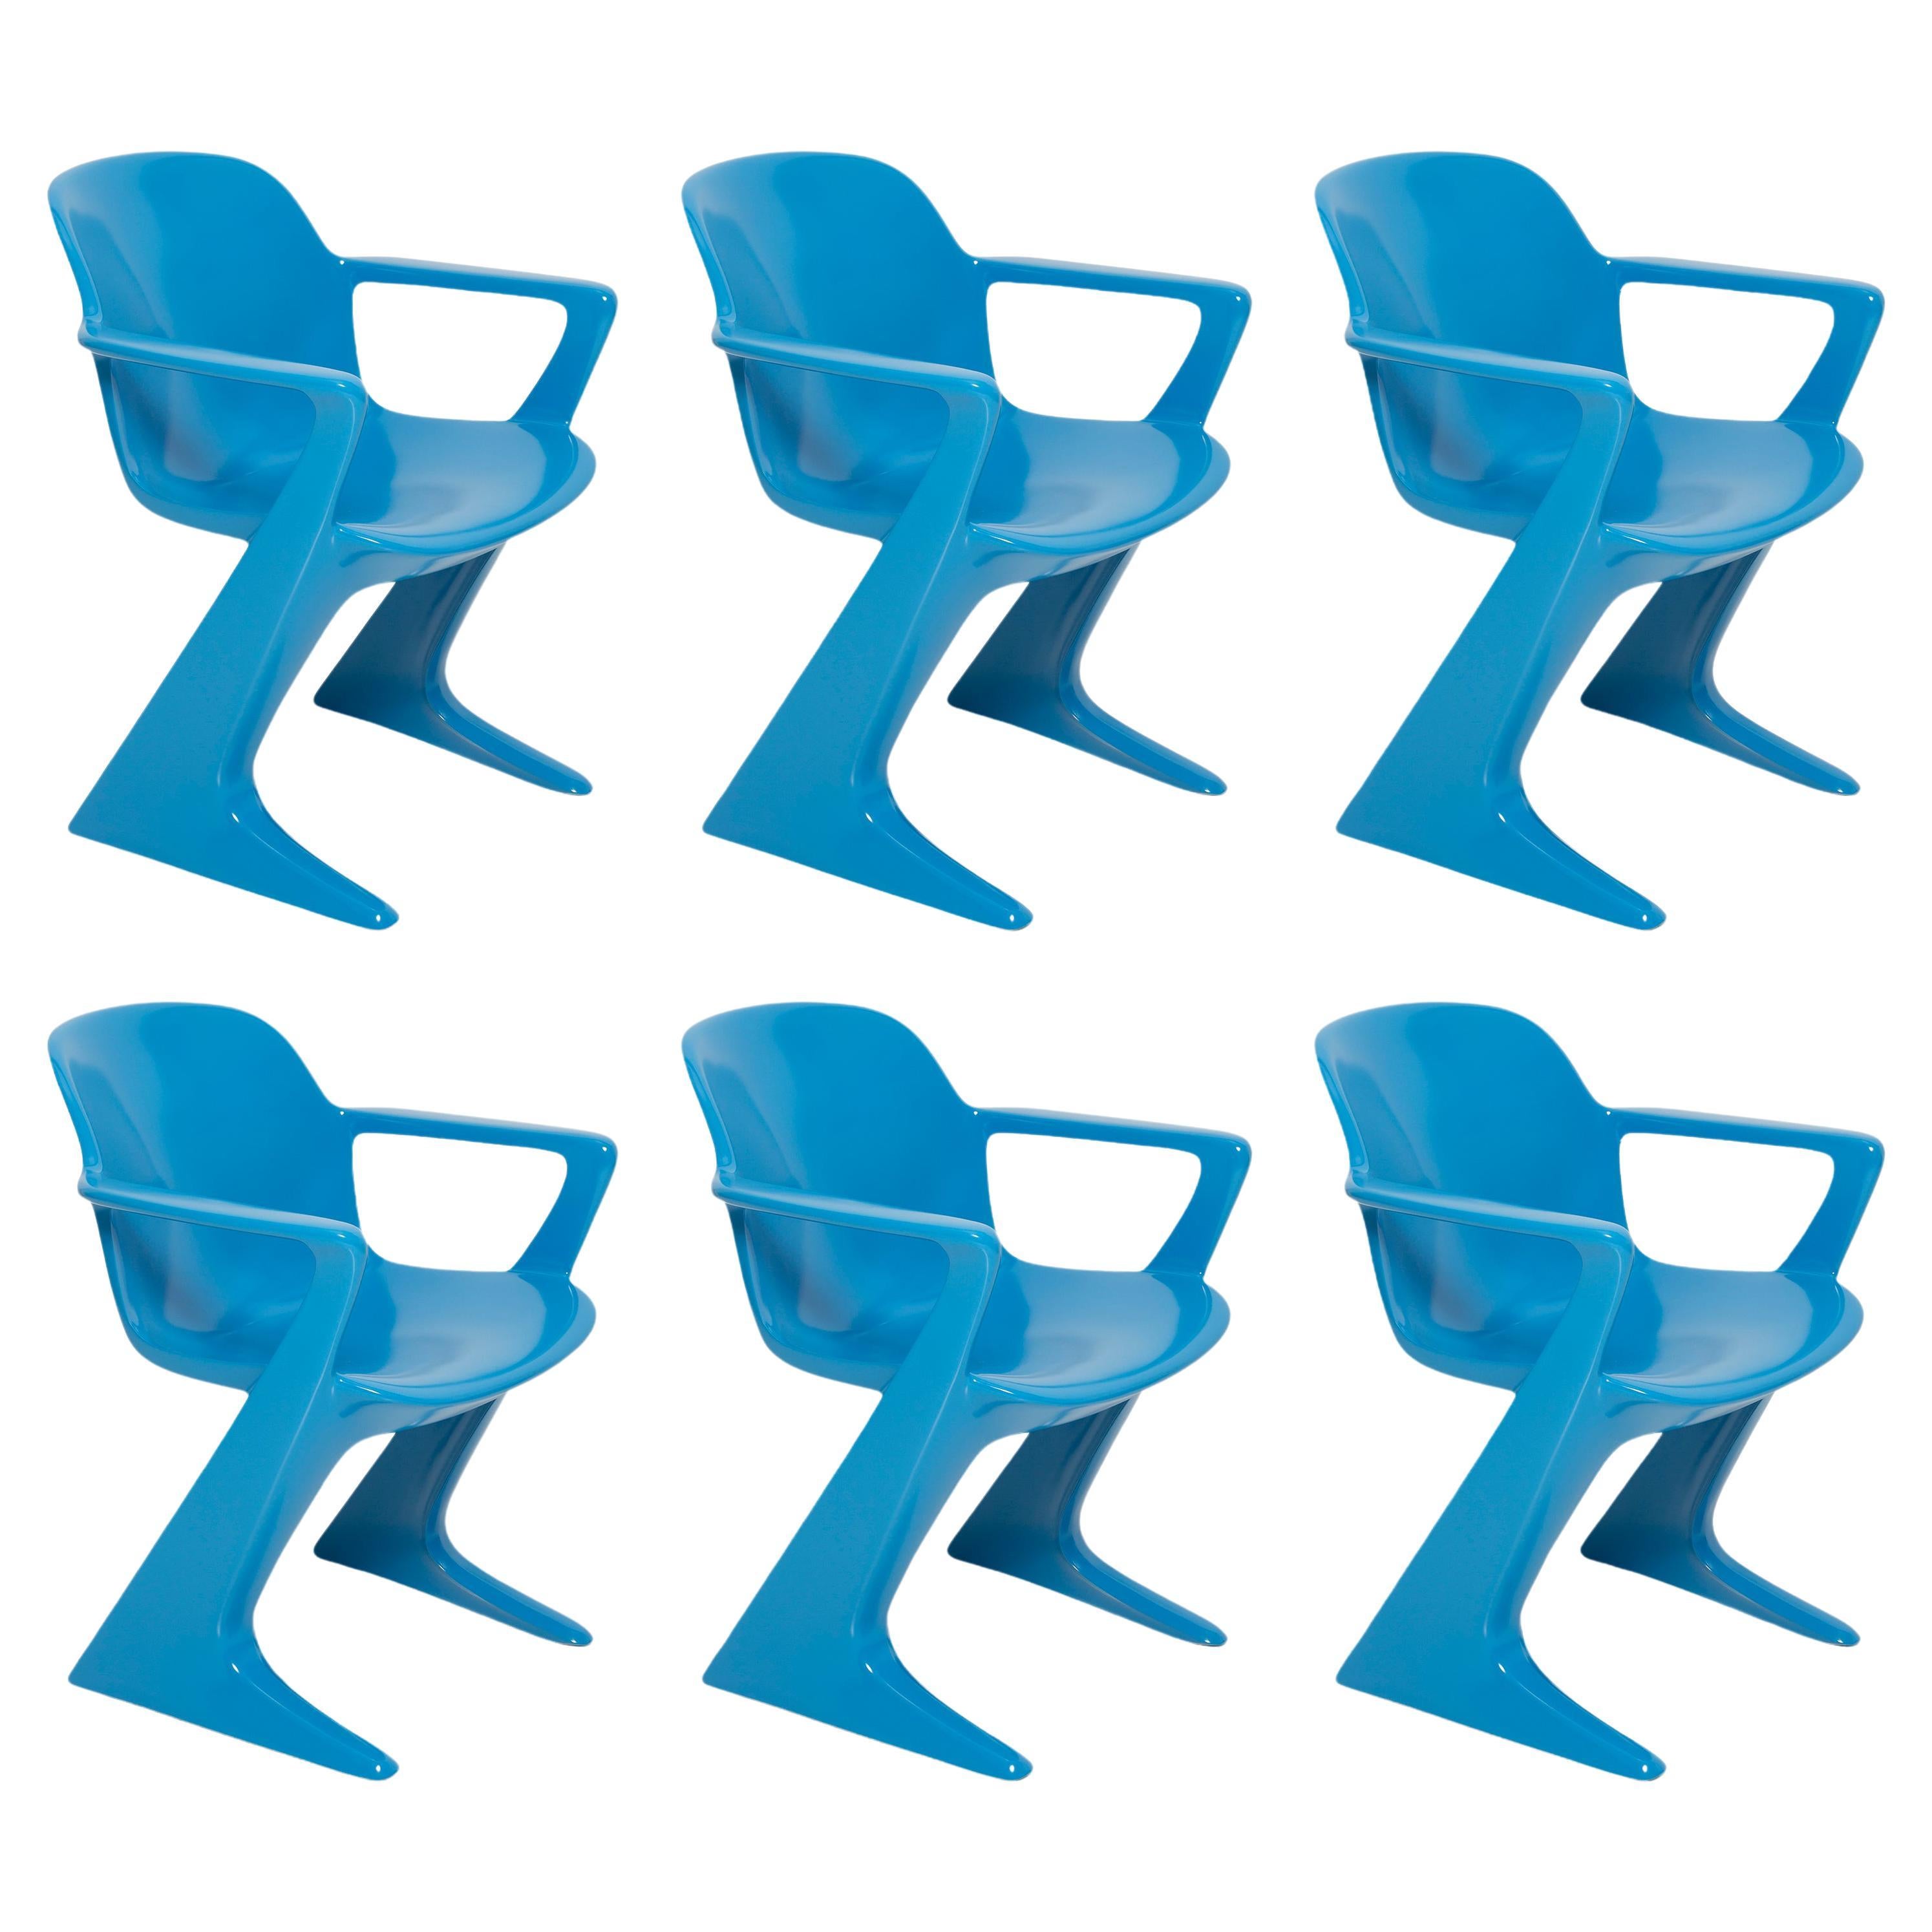 Ensemble de six chaises Kangourou bleues conçues par Ernst Moeckl, Allemagne, années 1960